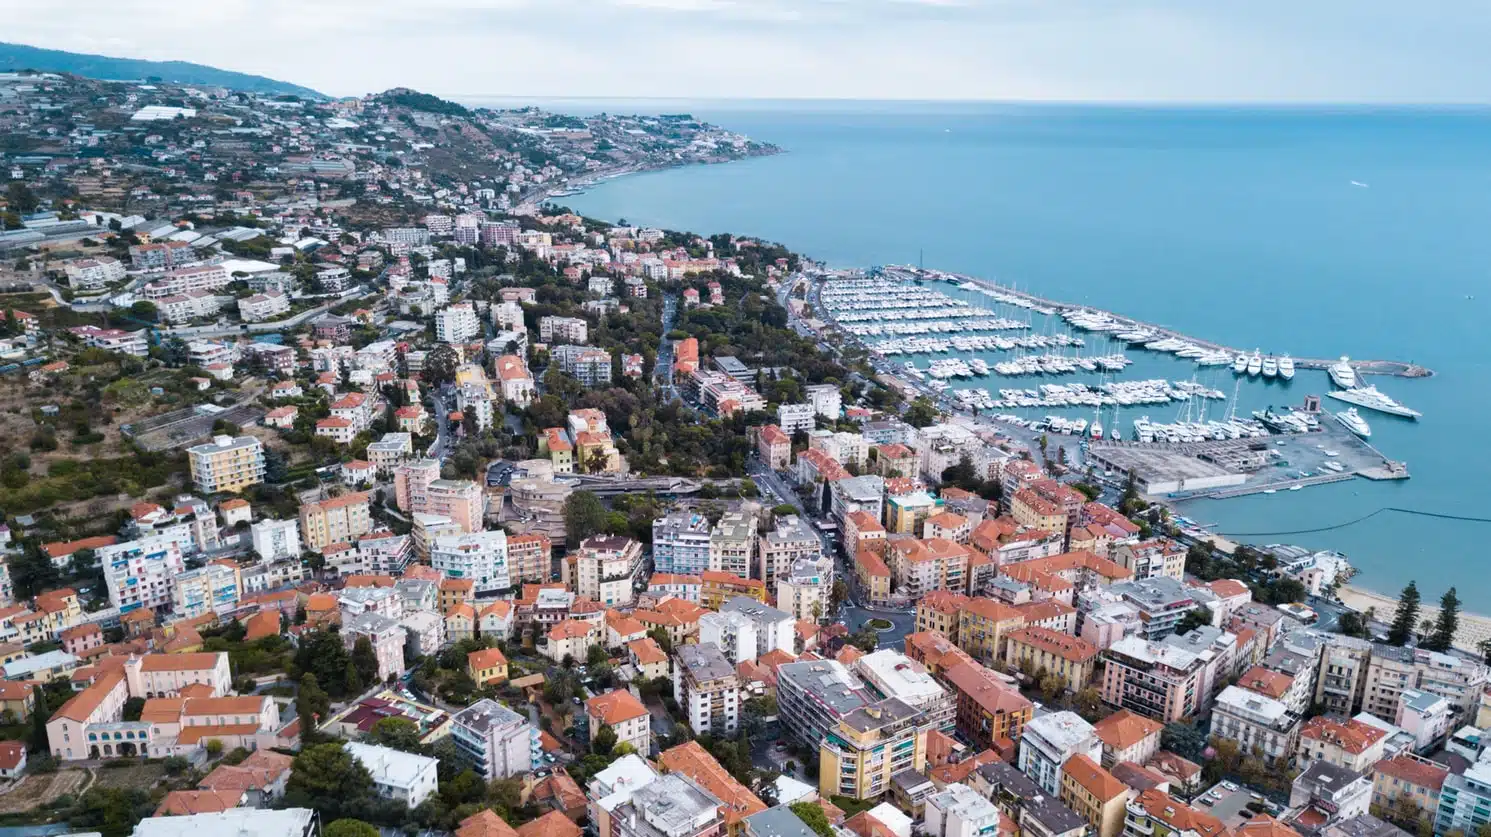 Immagine dall'alto di Sanremo